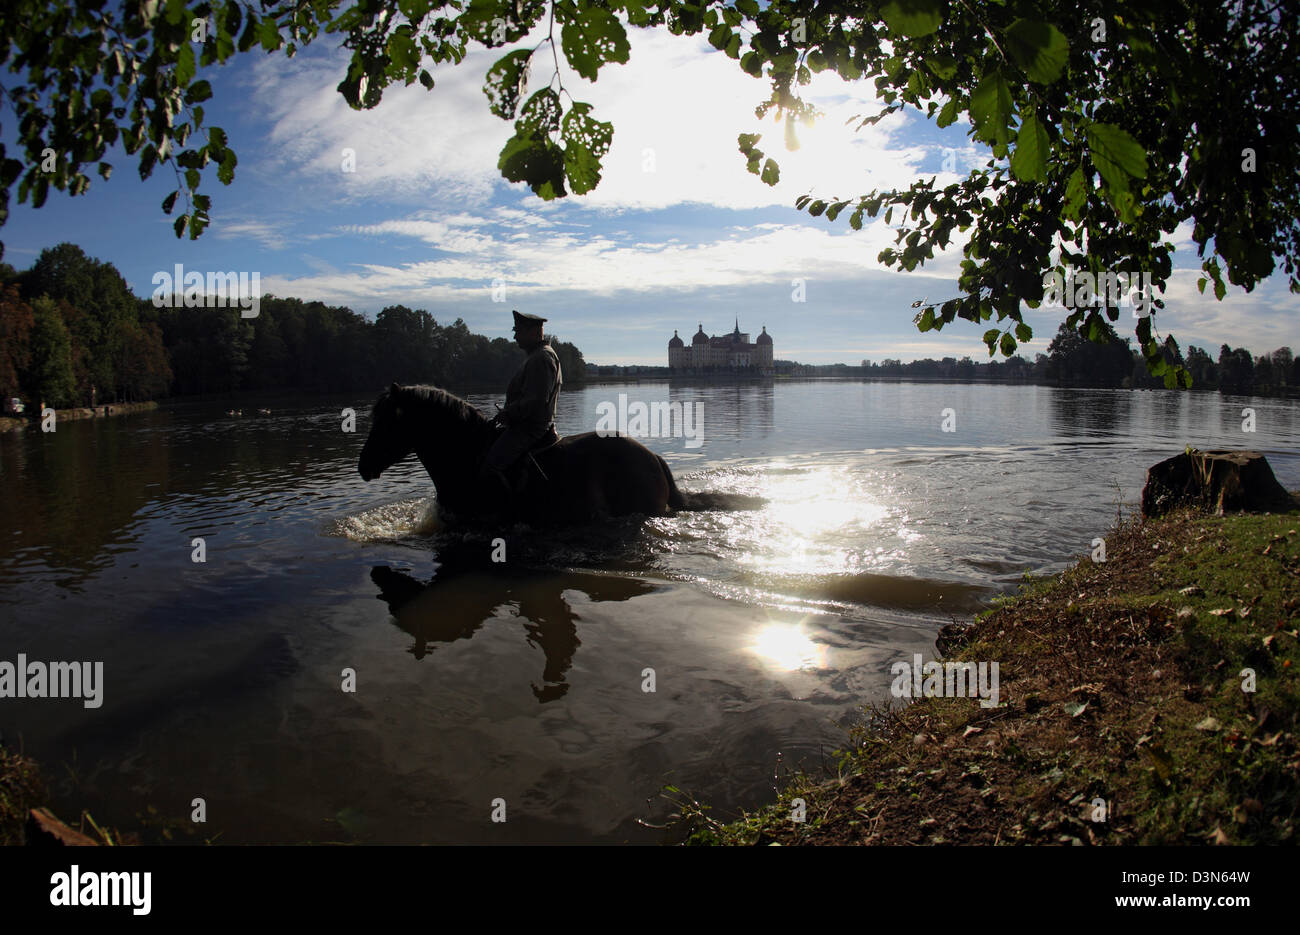 Moritzburg, Germania, silhouette di cavallo e cavaliere nel lago di fronte alla Schloss Moritzburg Foto Stock